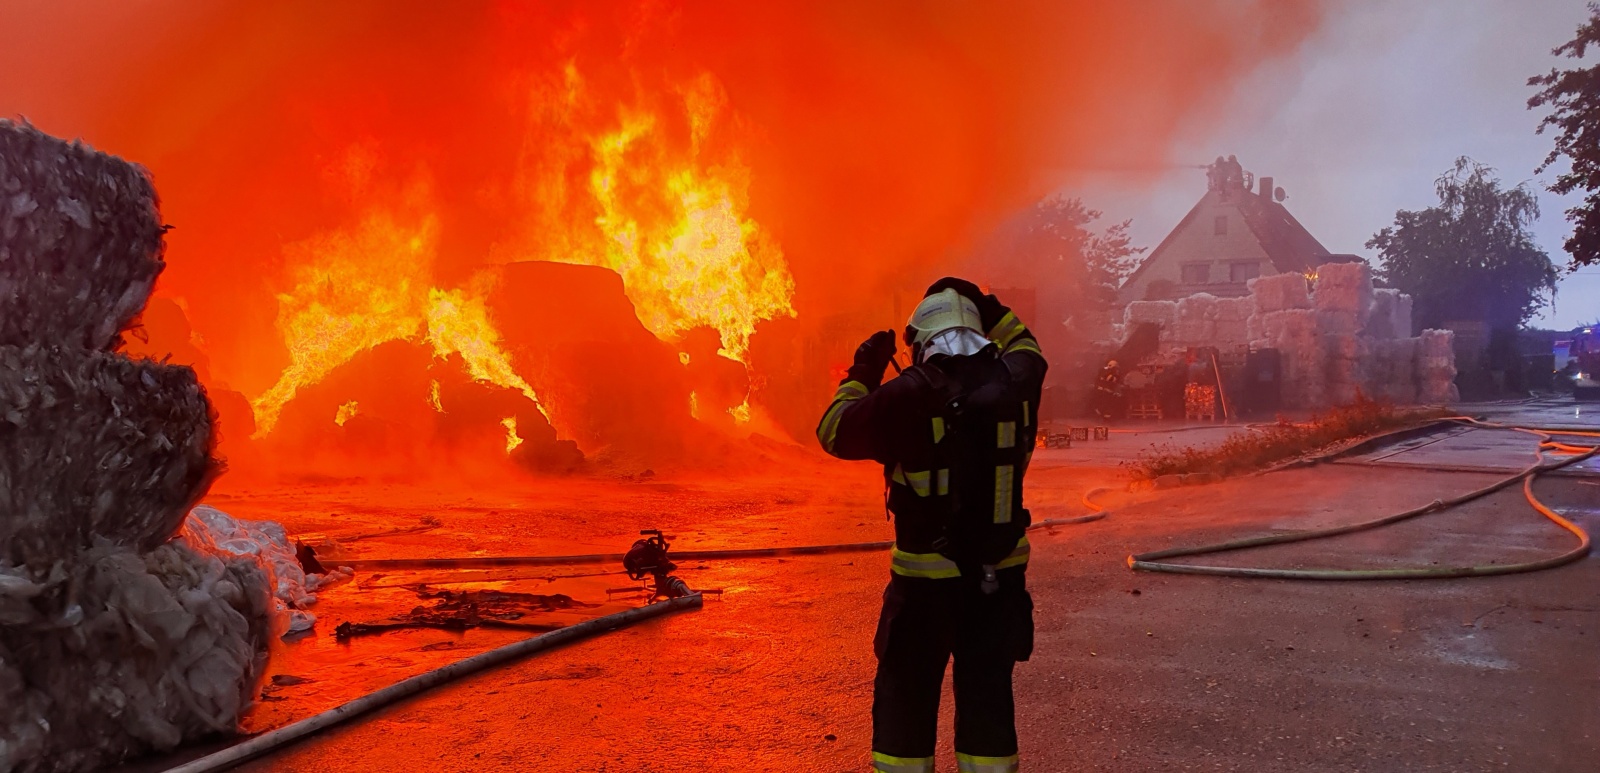 137-Likvidace požáru skladovacích hal a lisovaného odpadu v Zárybech v okrese Praha-východ ve zvláštním poplachovém stupni.jpg